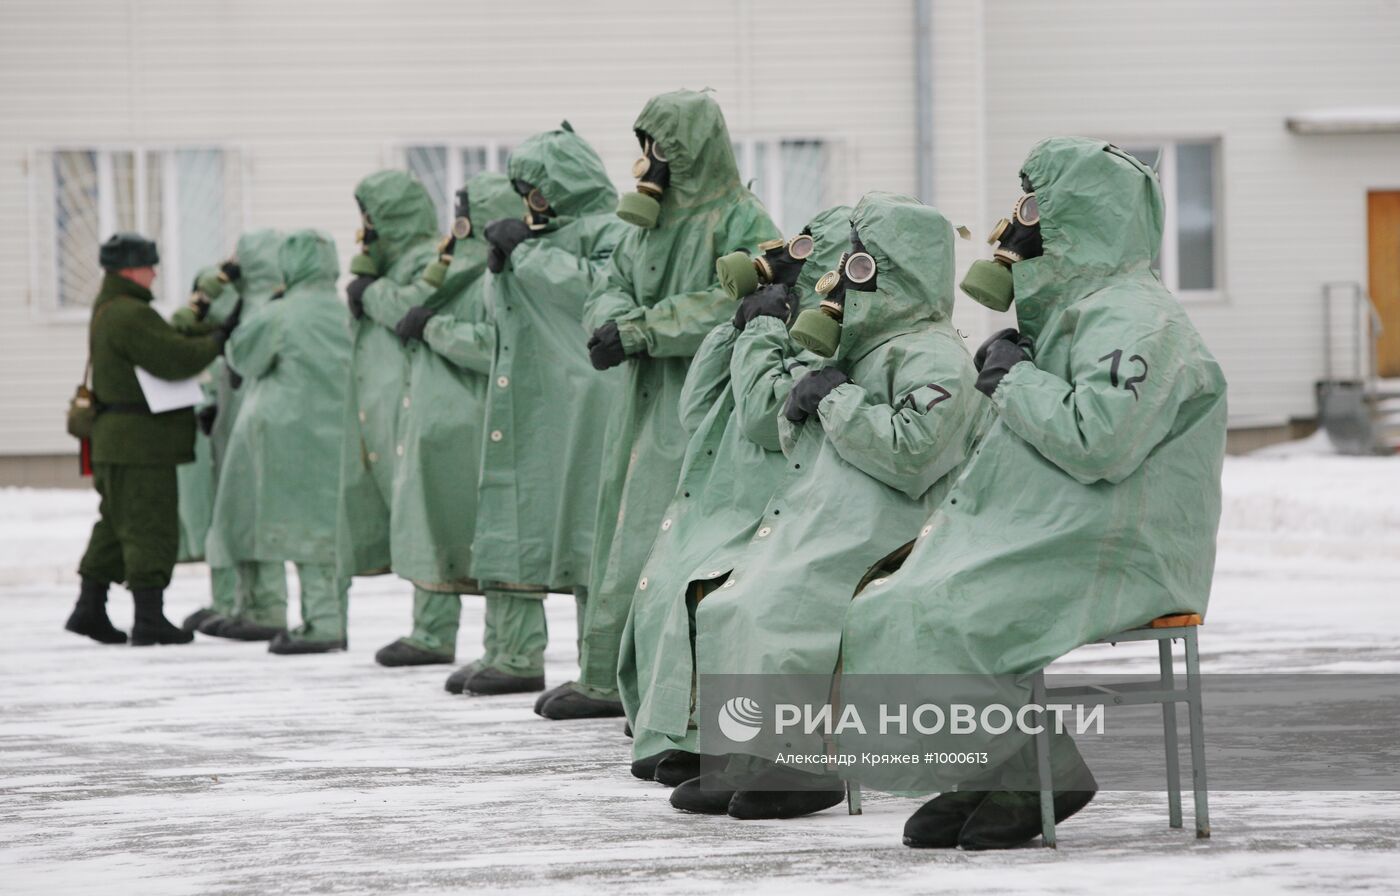 Подготовка офицеров в зимних условиях на 41-ом полигоне